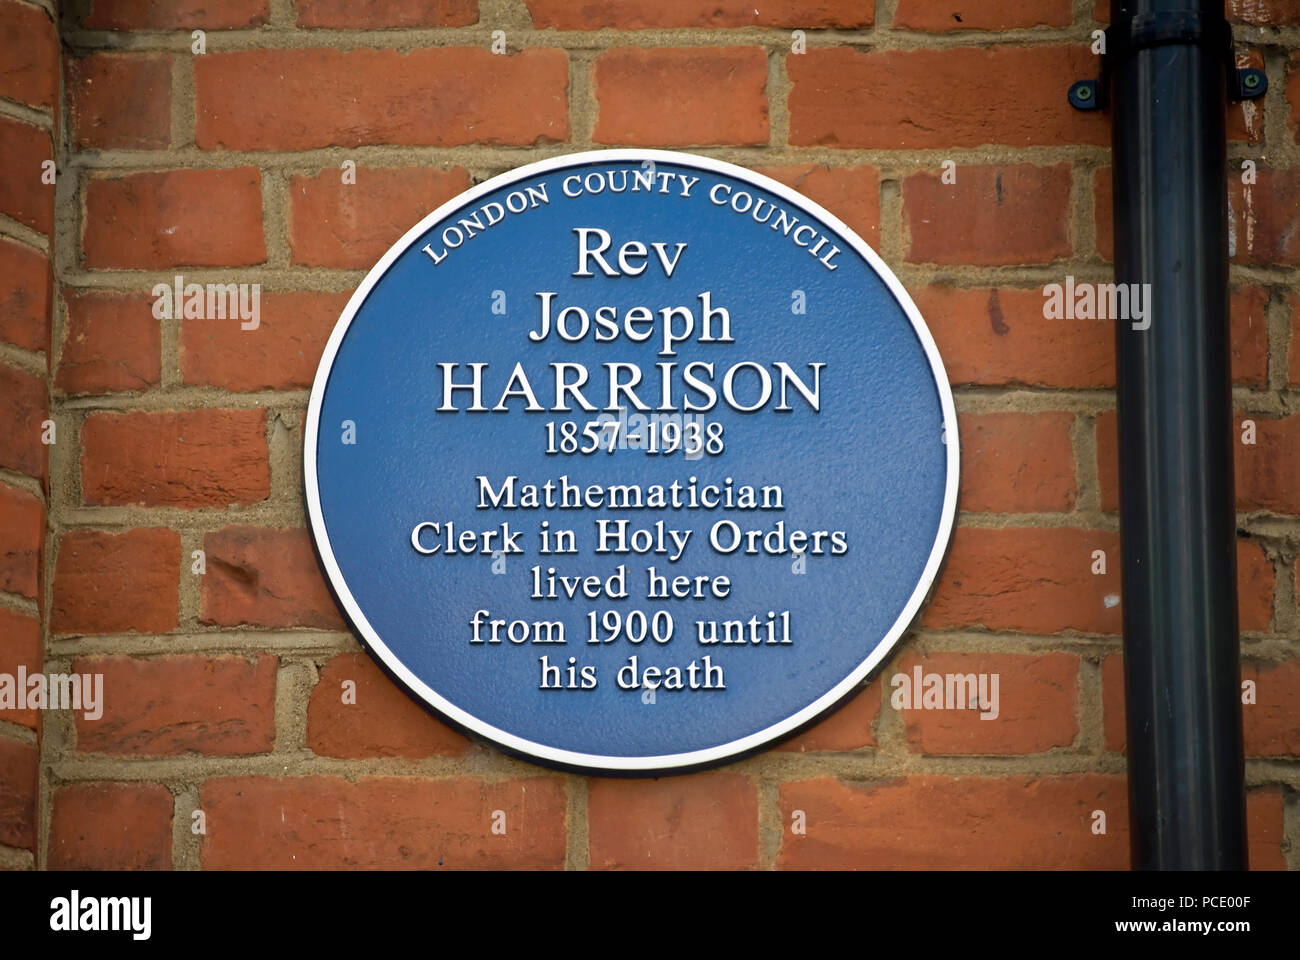 Le london county council blue plaque marquant un accueil du révérend Joseph Harrison, mathématicien et greffier dans l'ordre, à Ealing, Londres, Angleterre Banque D'Images